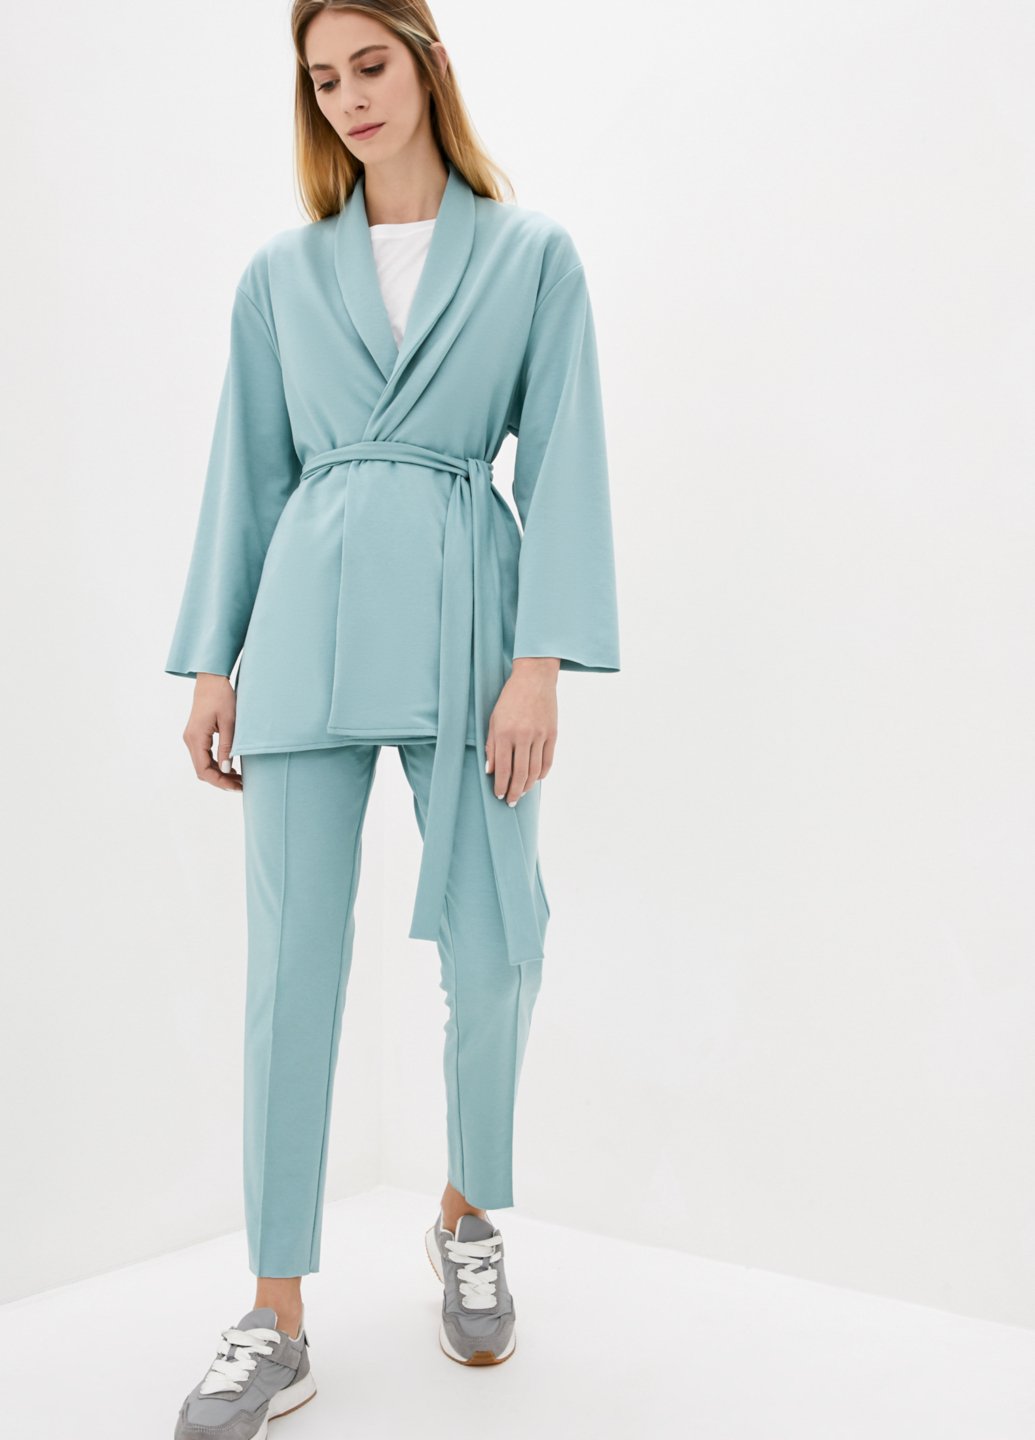 Купить Классический костюм женский бирюзового цвета Merlini Йоркшир 100000051, размер 42-44 в интернет-магазине